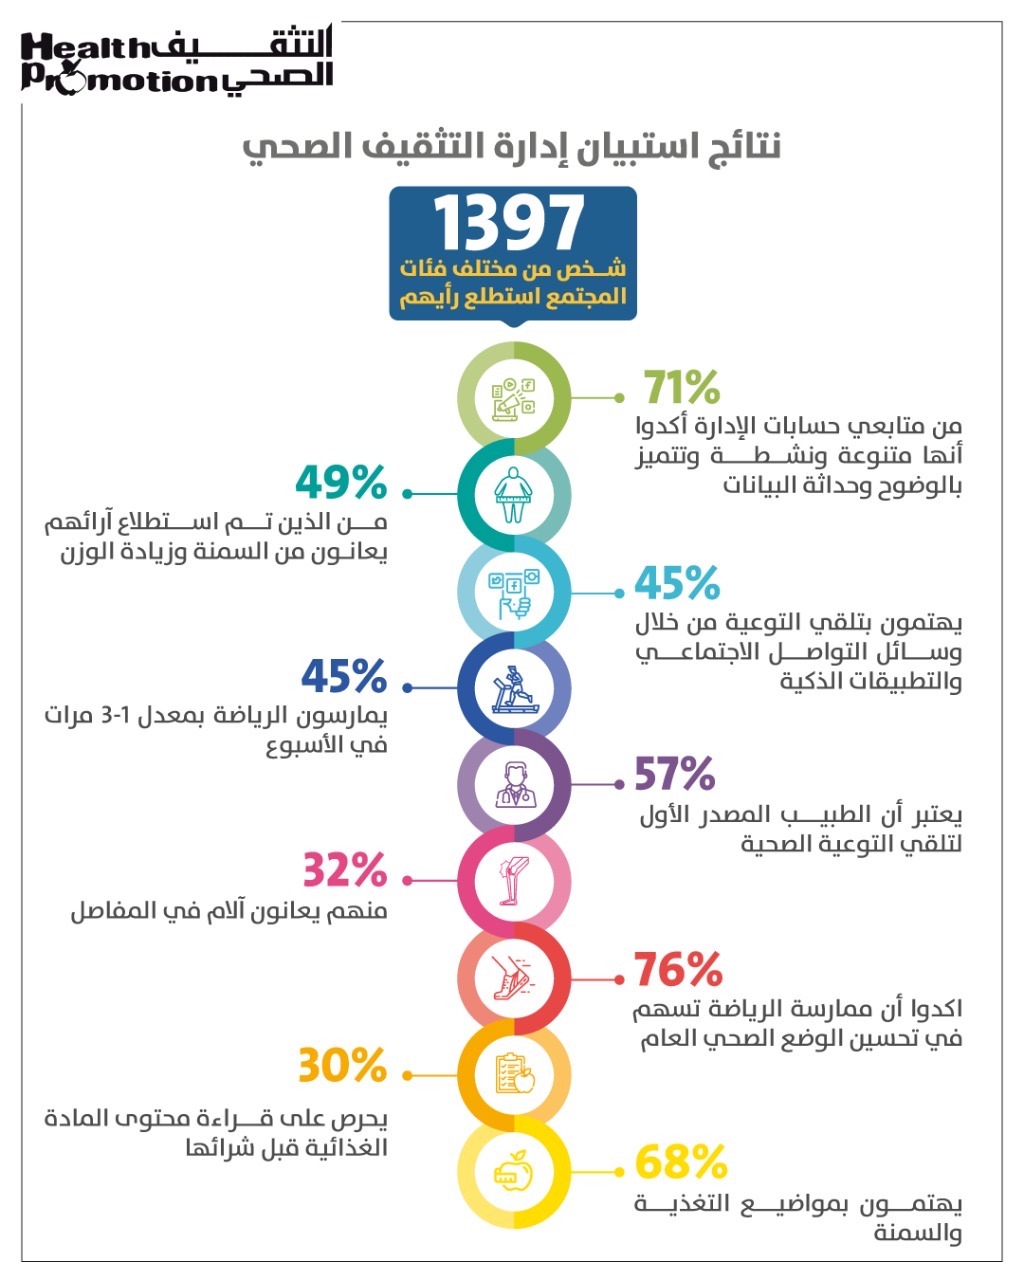 ارتفاع معدل الاهتمام بالبرامج التي تعزز من تبني نمط الحياة الصحي لدى سكان الإمارة